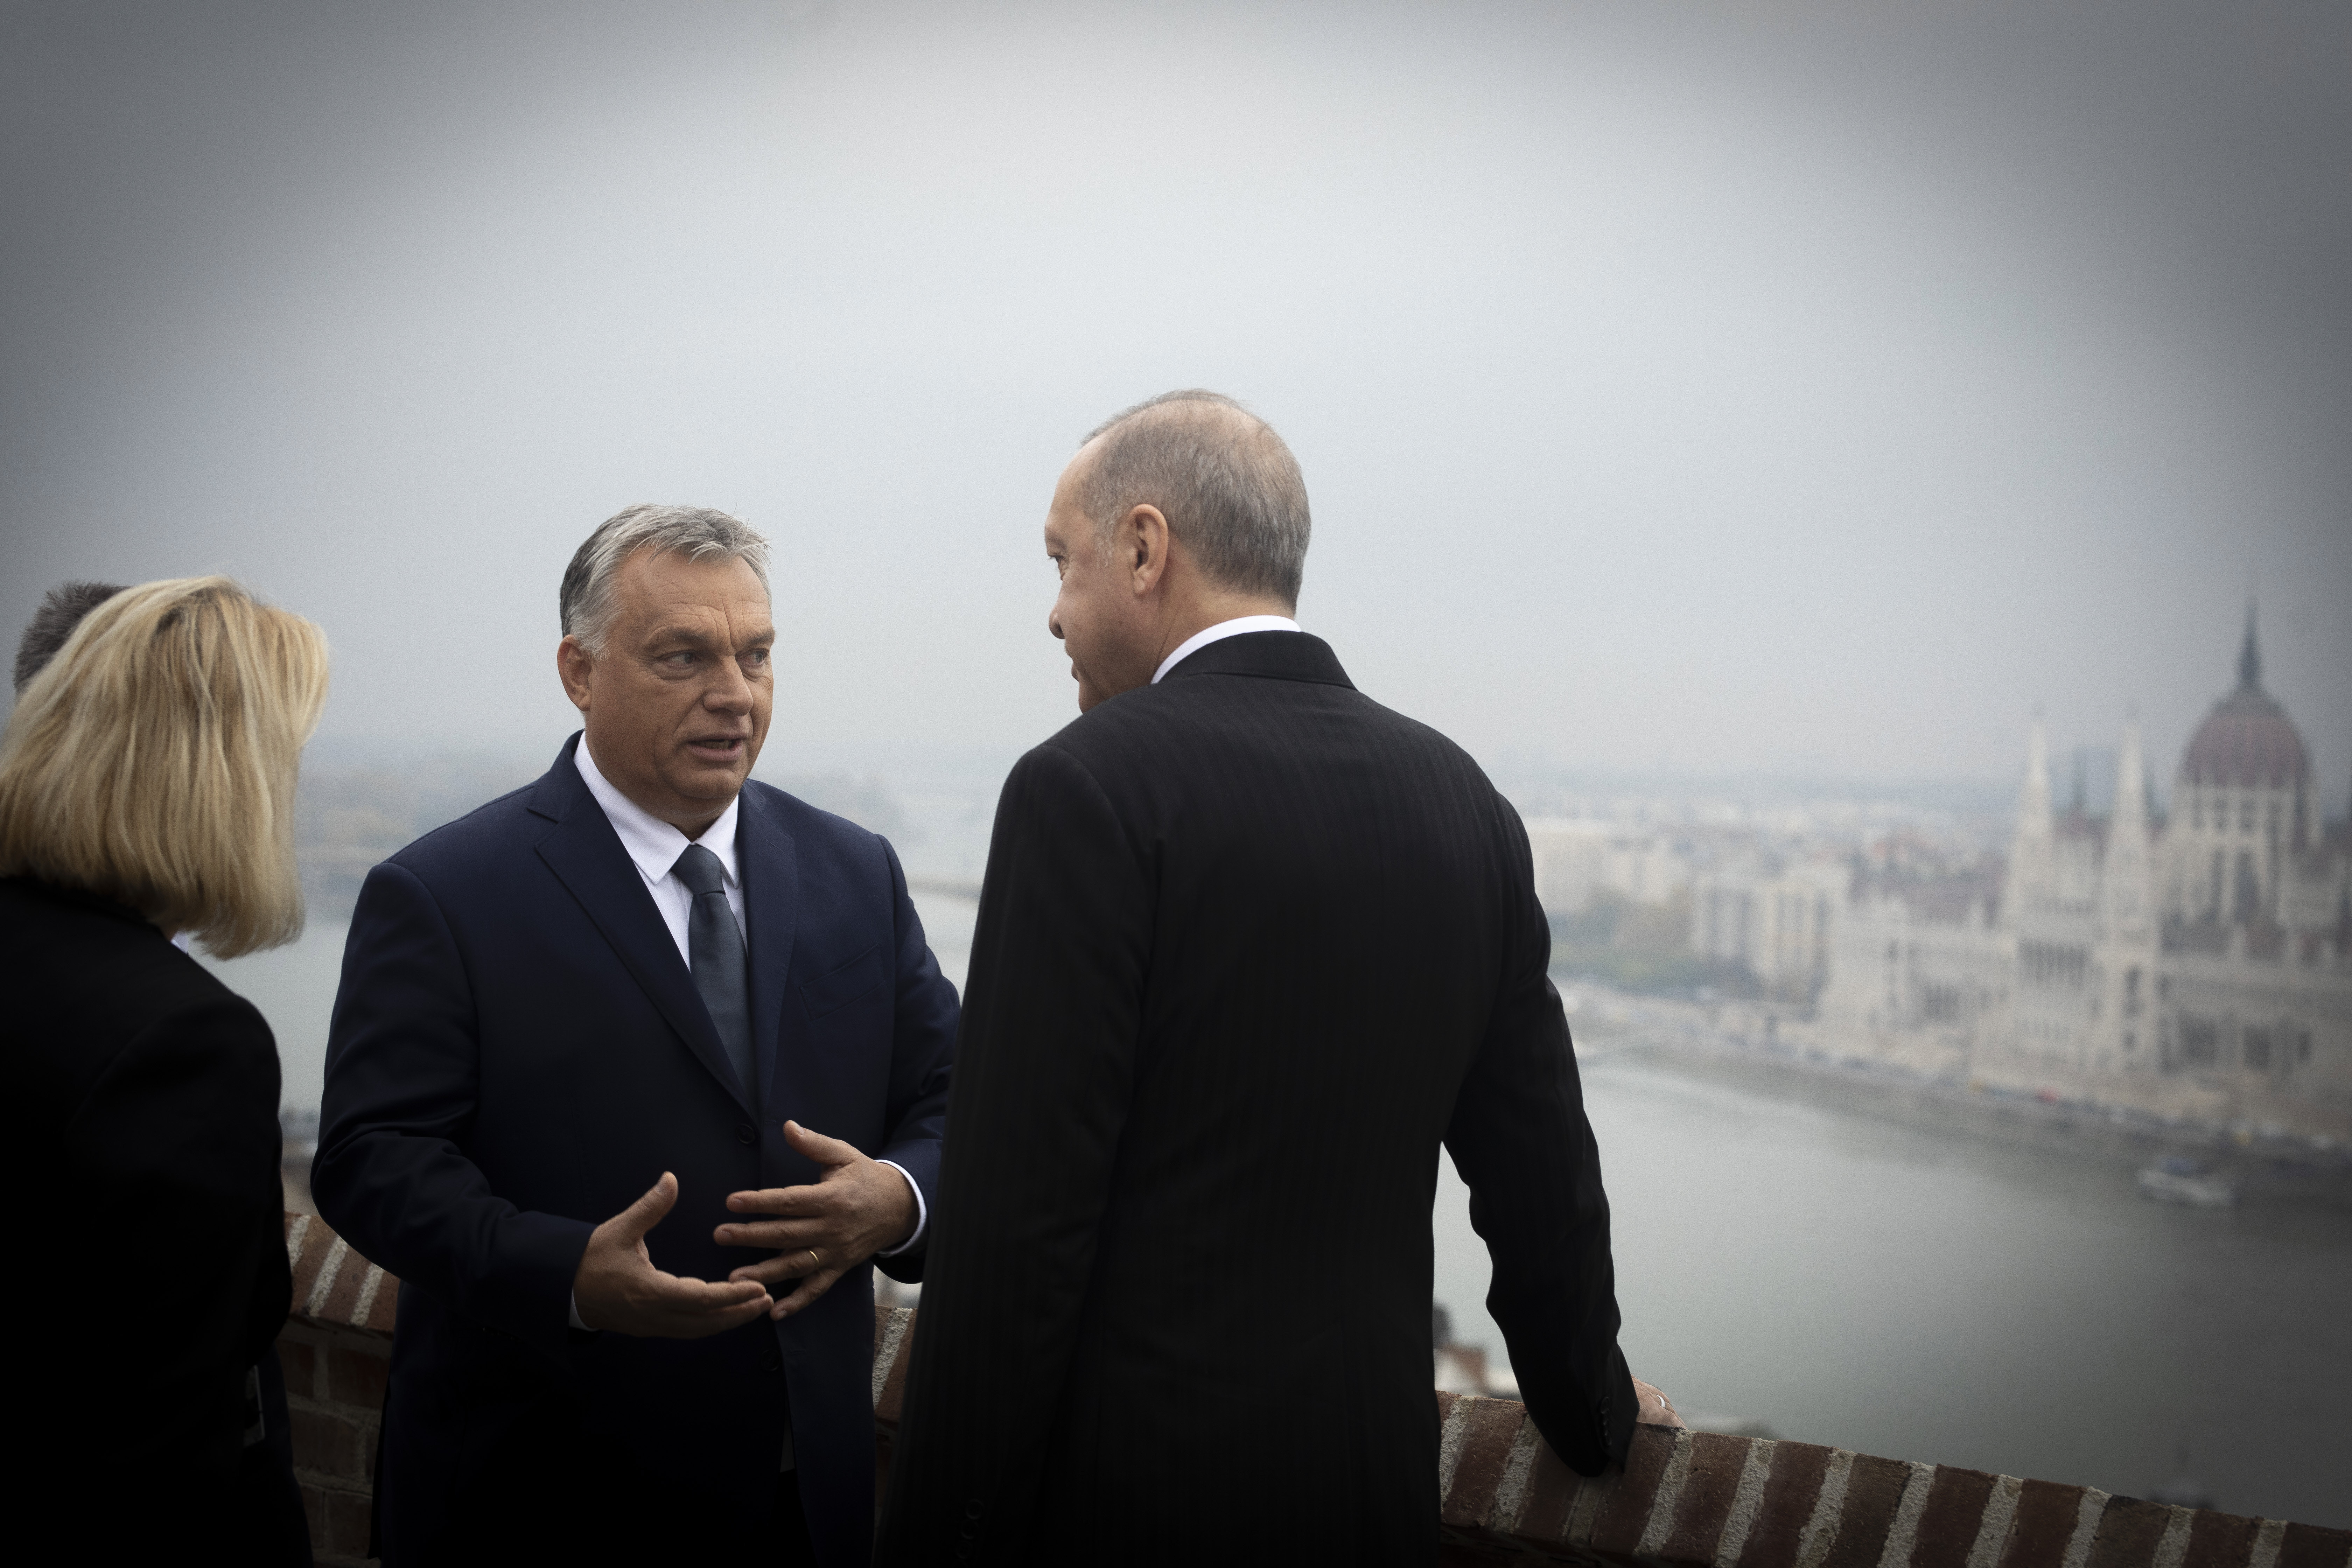 Erdogan elnök meghívta Orbán miniszterelnököt a szombati beiktatási ünnepségére, amit emez köszönettel elfogadott